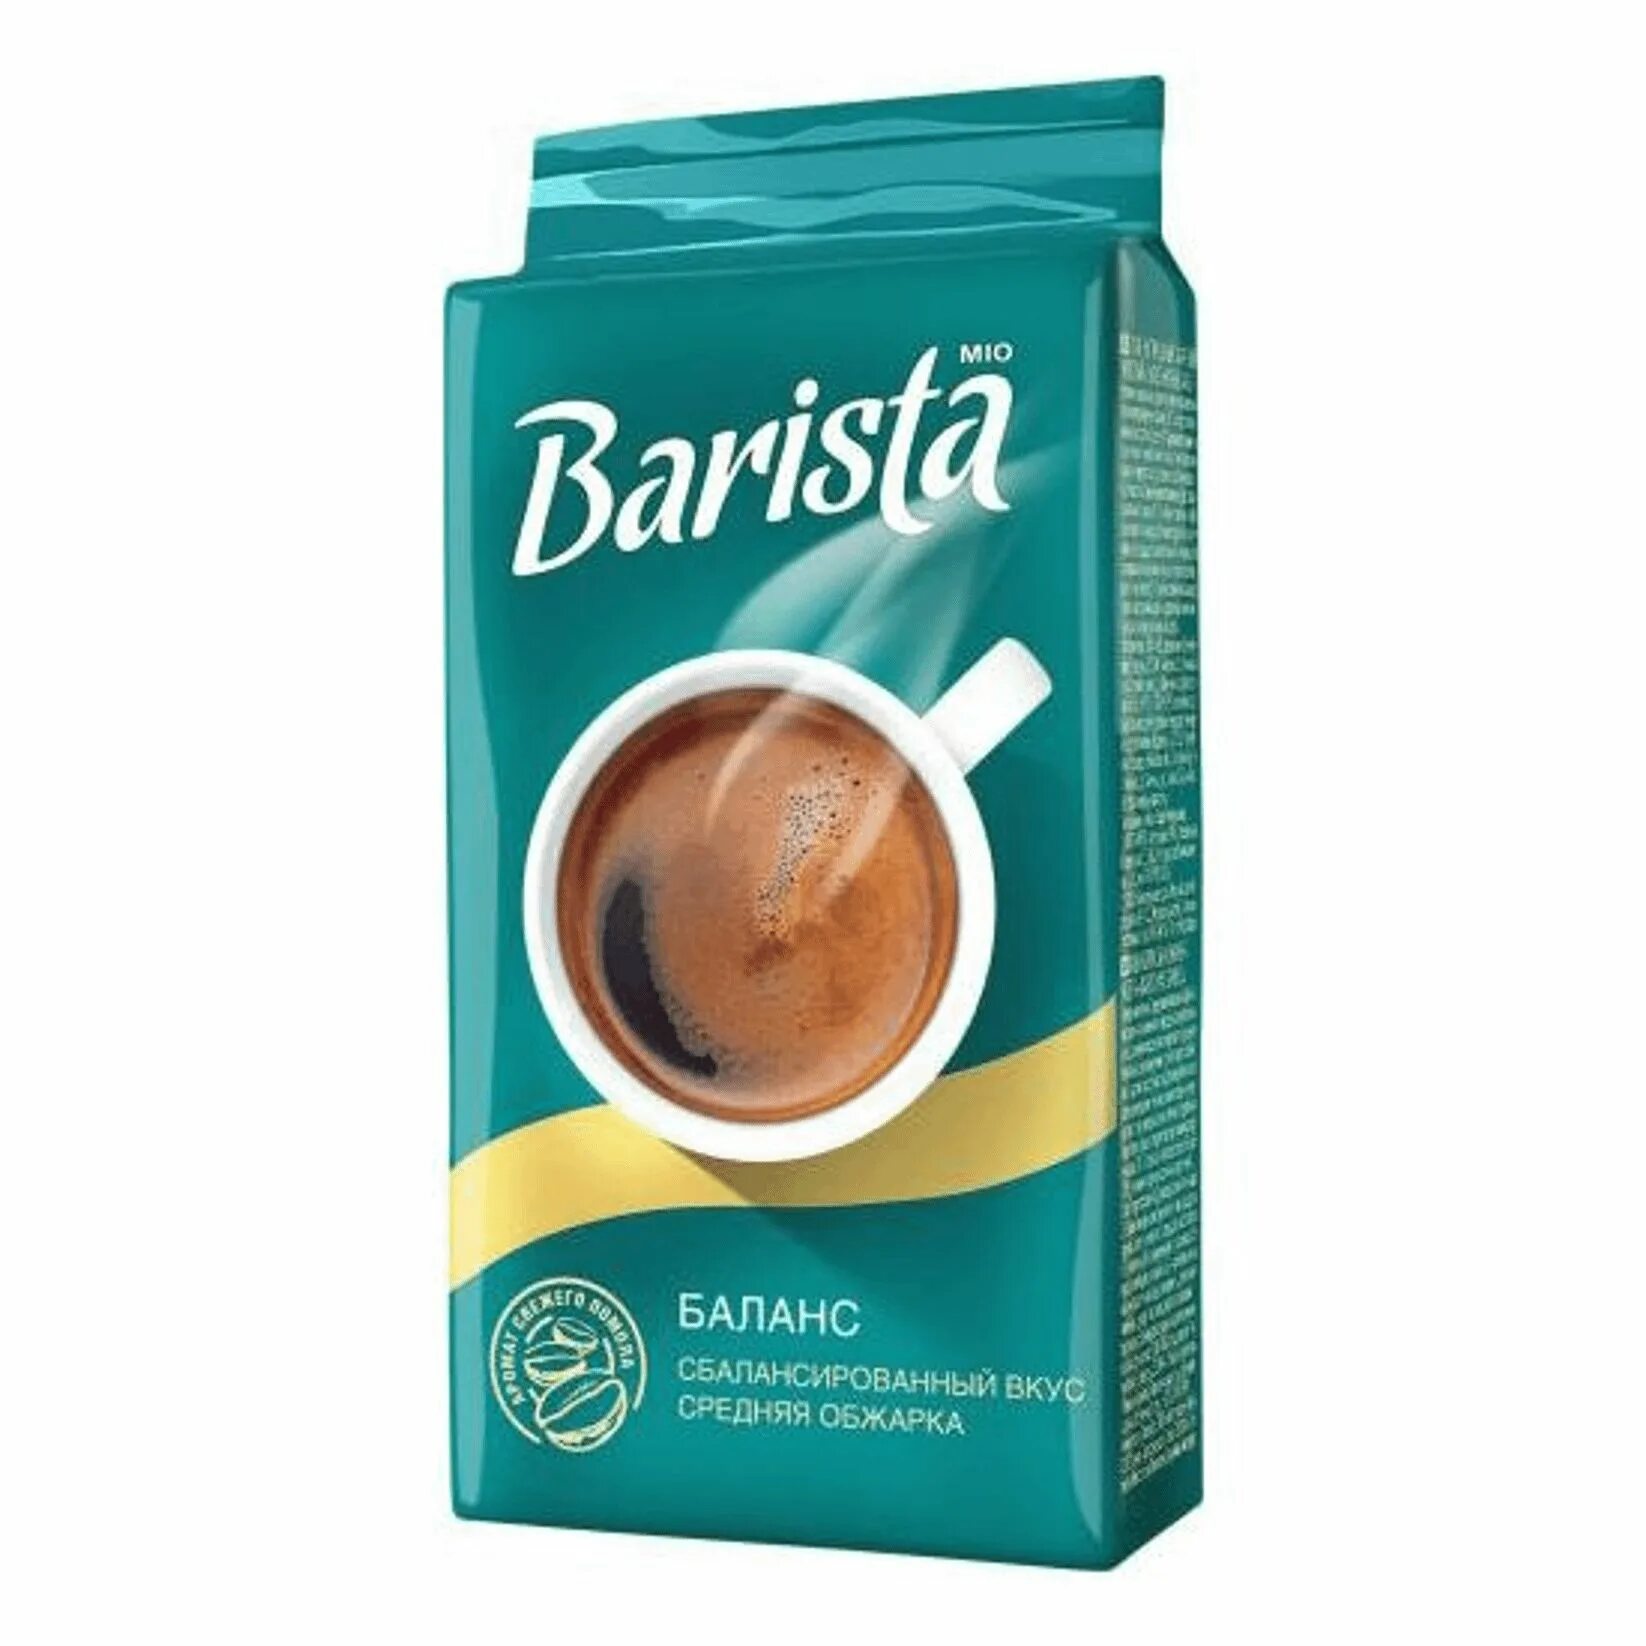 Кофе barista купить. Кофе молотый Barista mio. Кофе молотый Barista mio 225г. Кофе Barista Мио баланс 225гр. Barista mio Balance кофе.